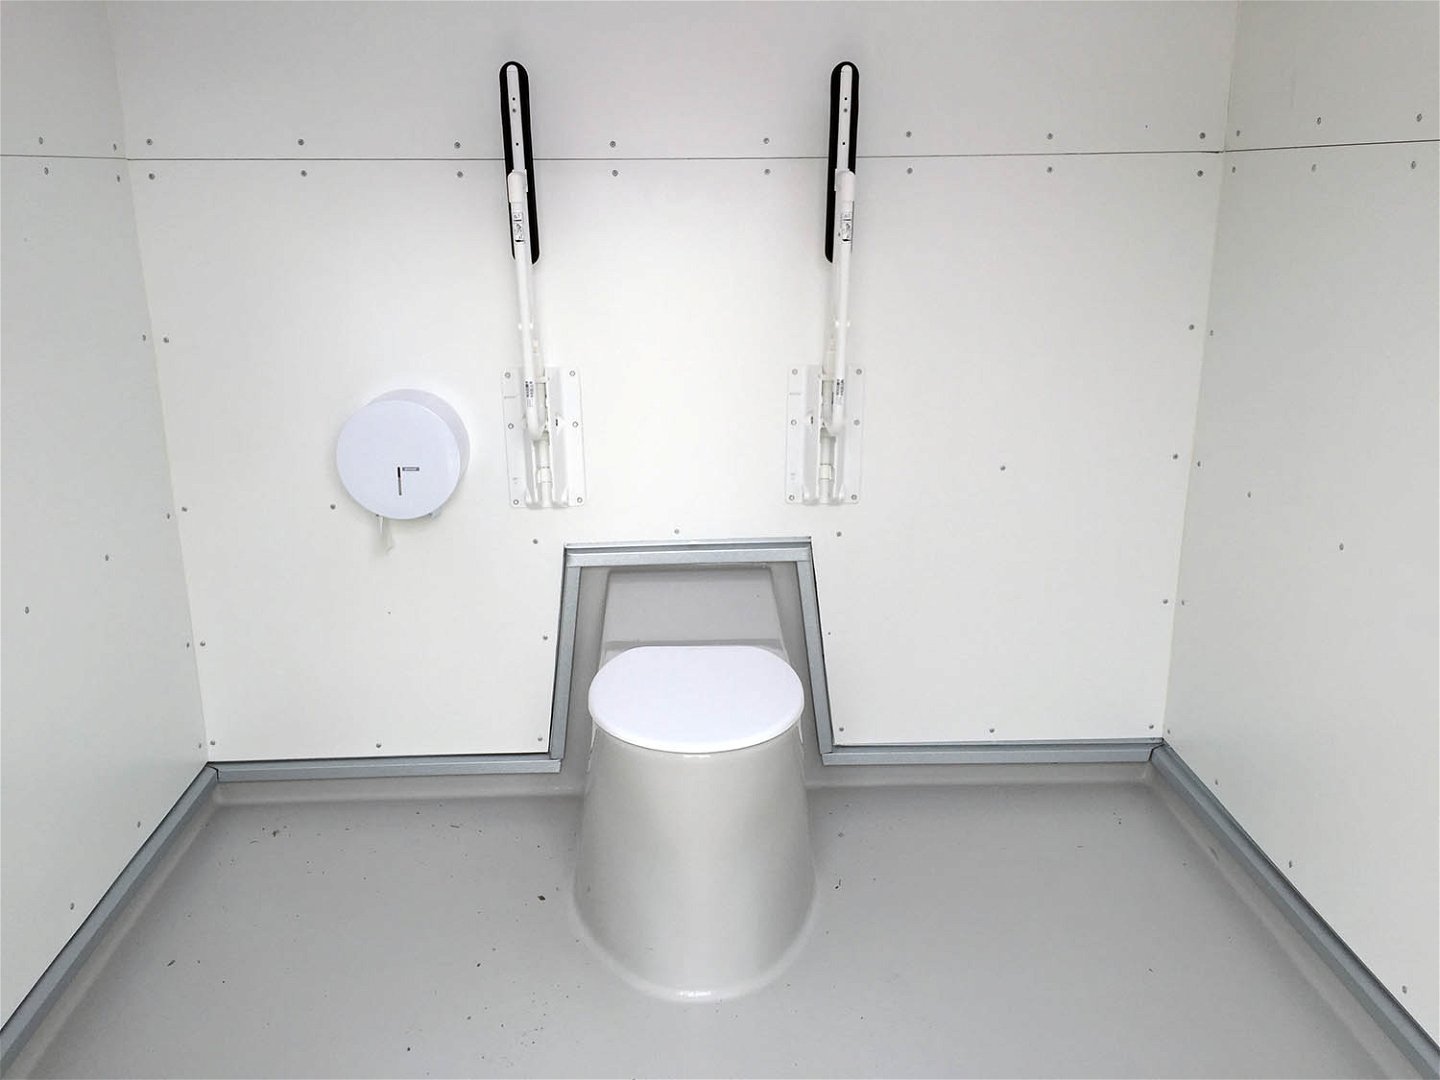 Toalettstol med locket stängt. Två armstöd uppfällda mot väggen. Toalettpappershållare till vänster om toalettstolen.